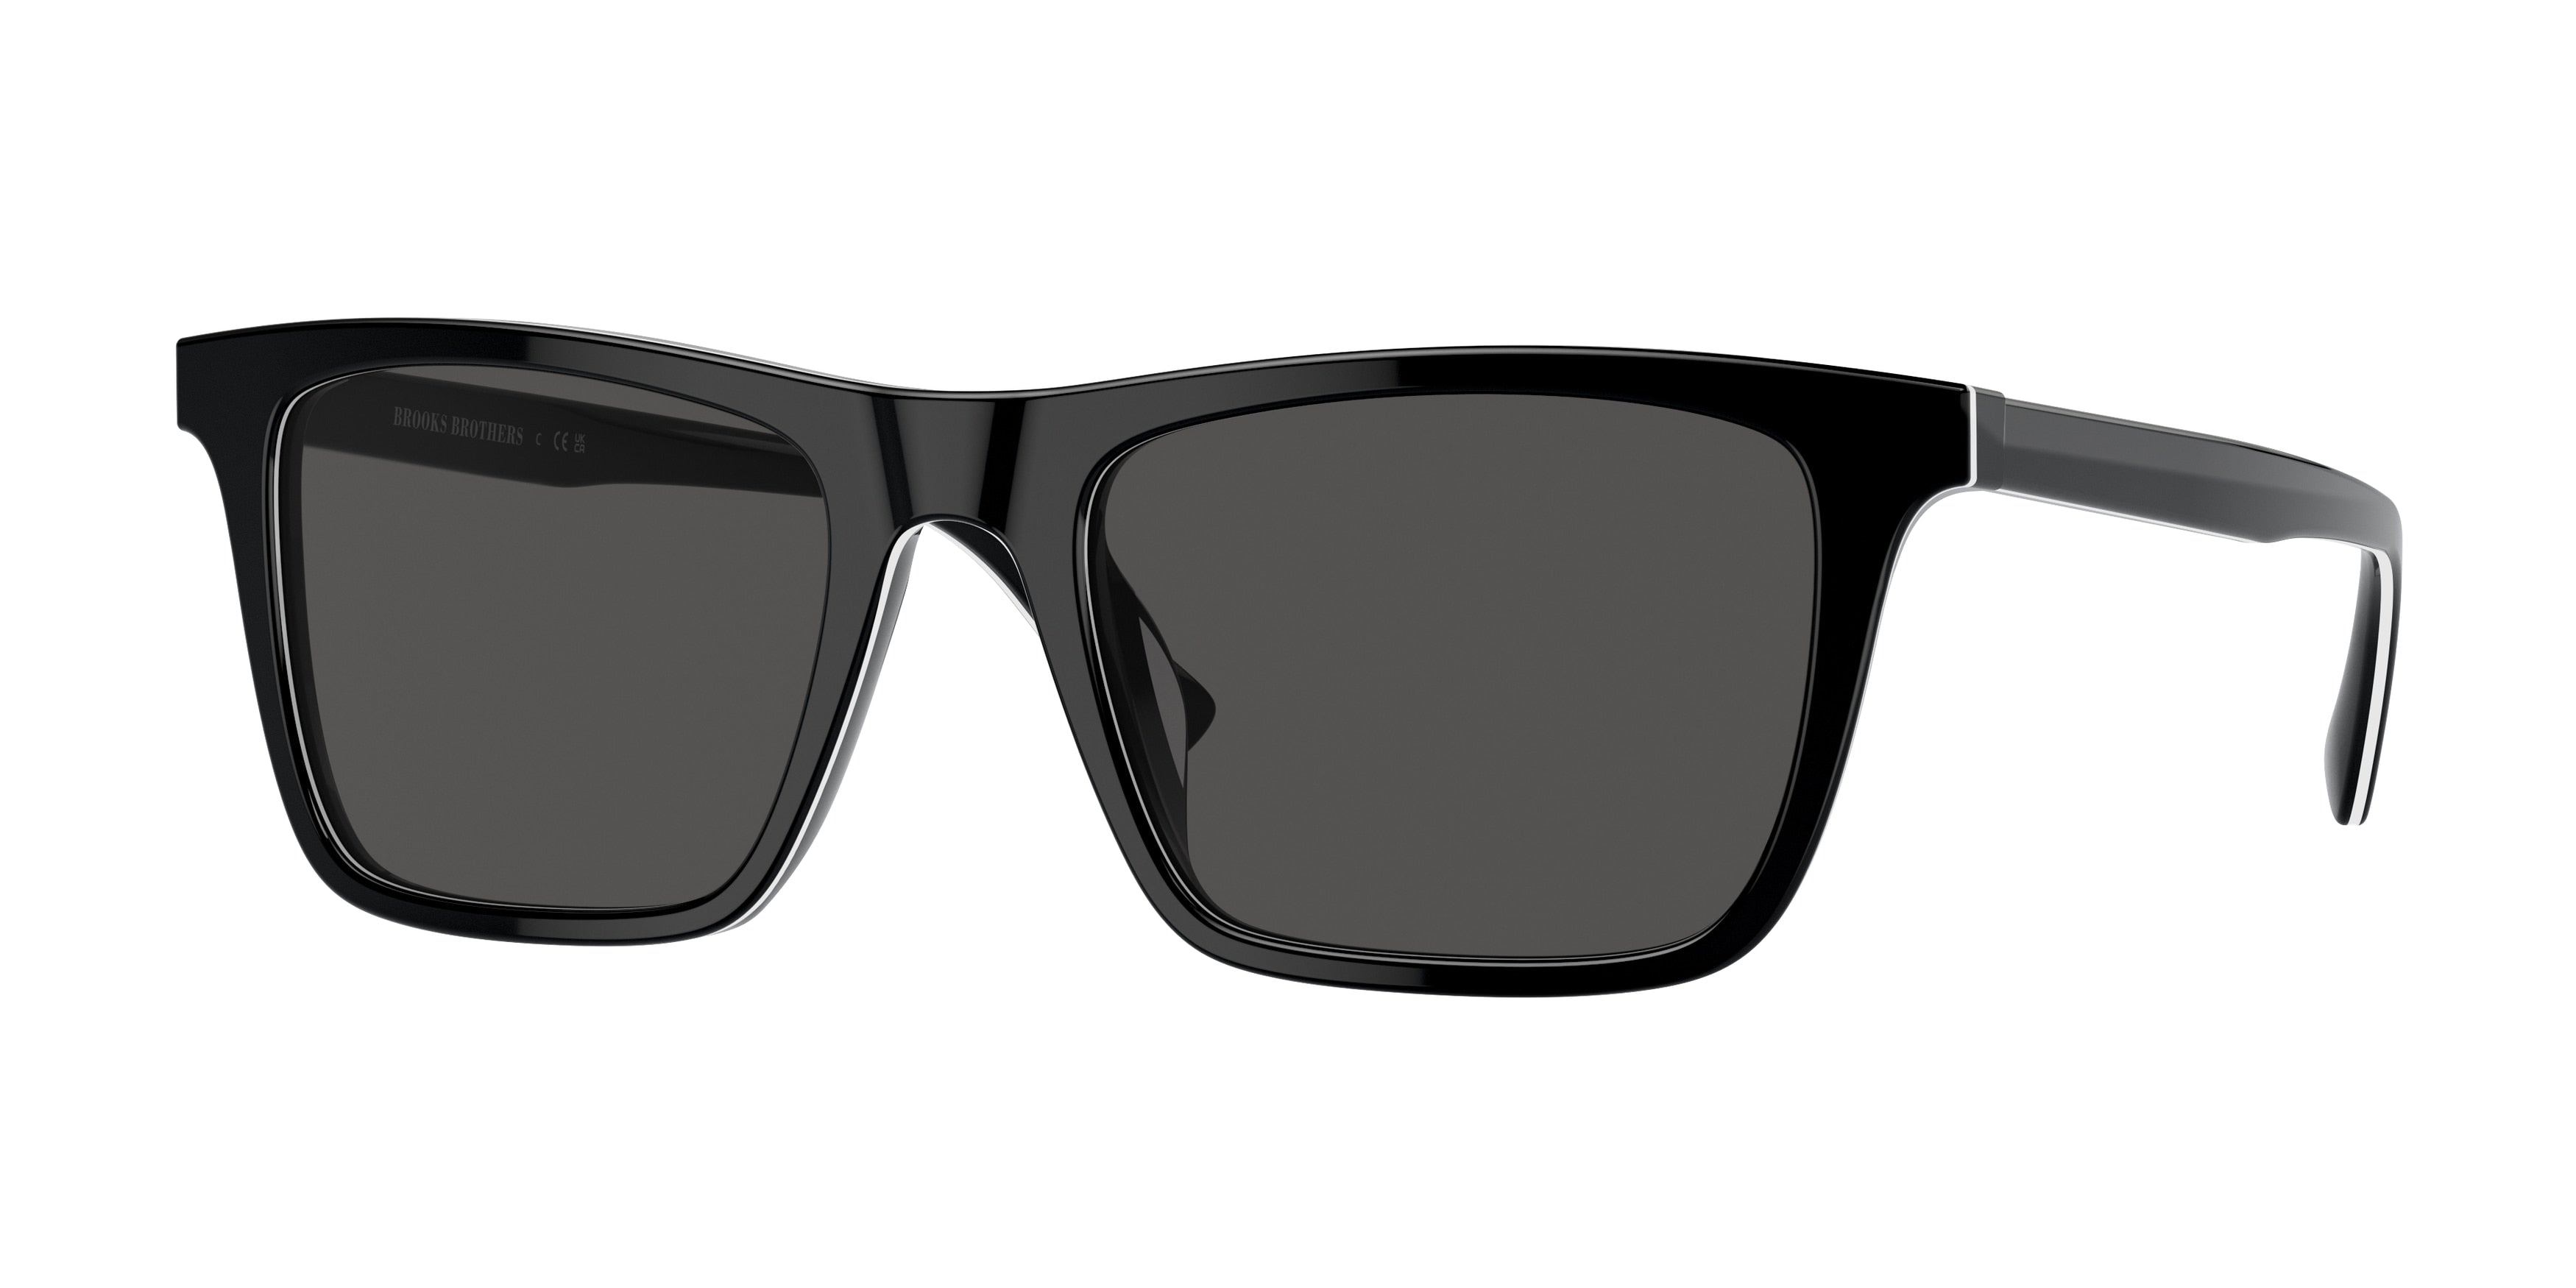 Brooks Brothers BB5051U Square Sunglasses  600787-Black White Laminate 56-145-20 - Color Map Black